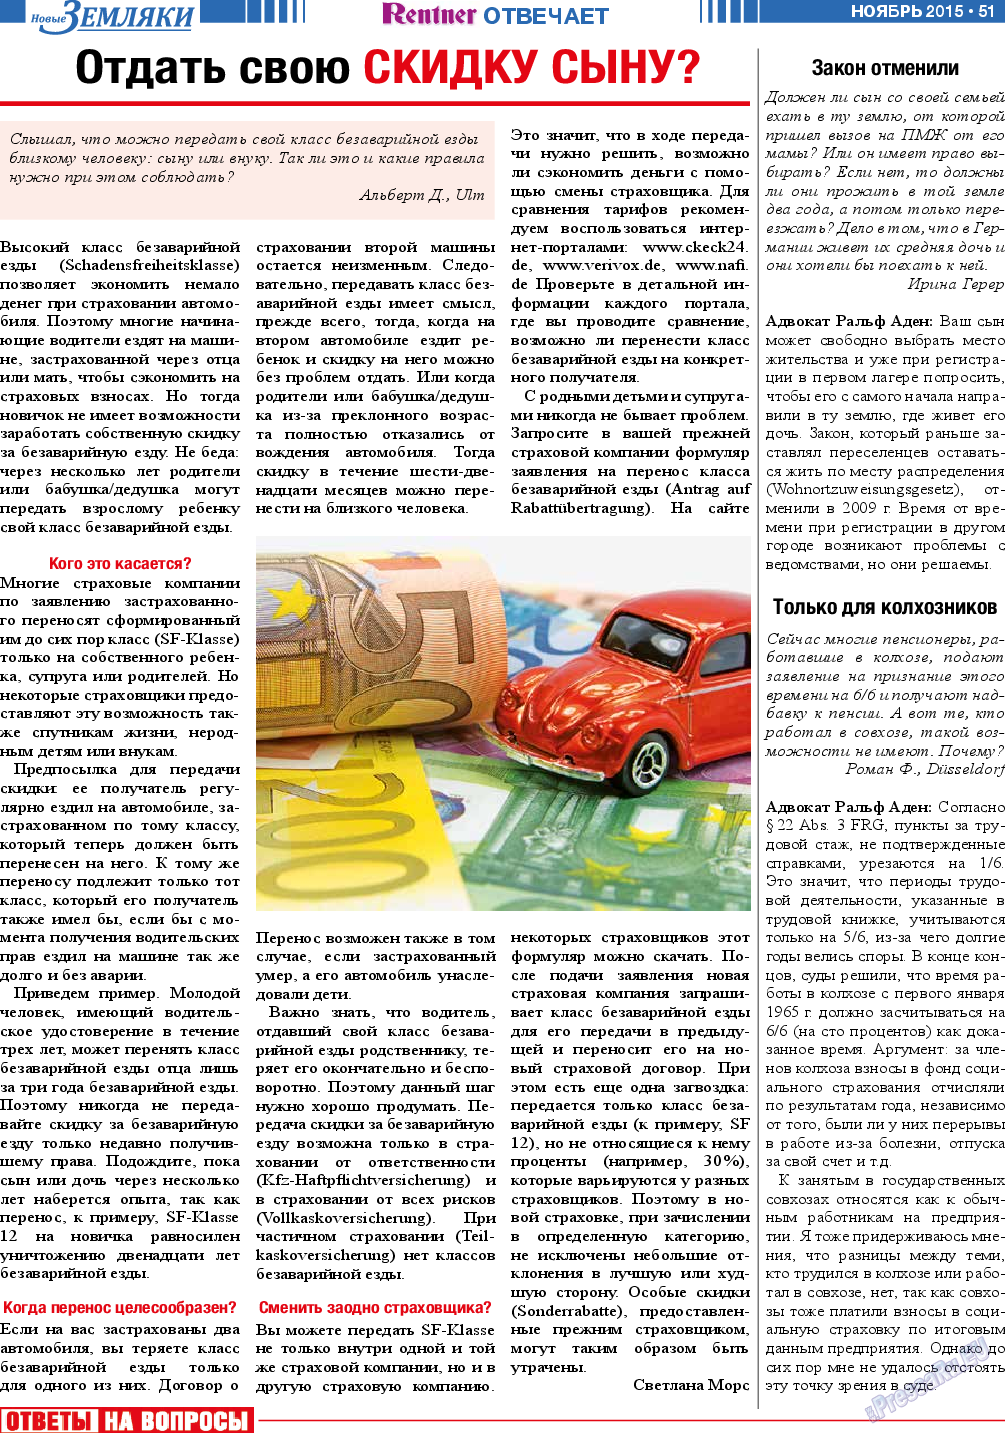 Новые Земляки, газета. 2015 №11 стр.51